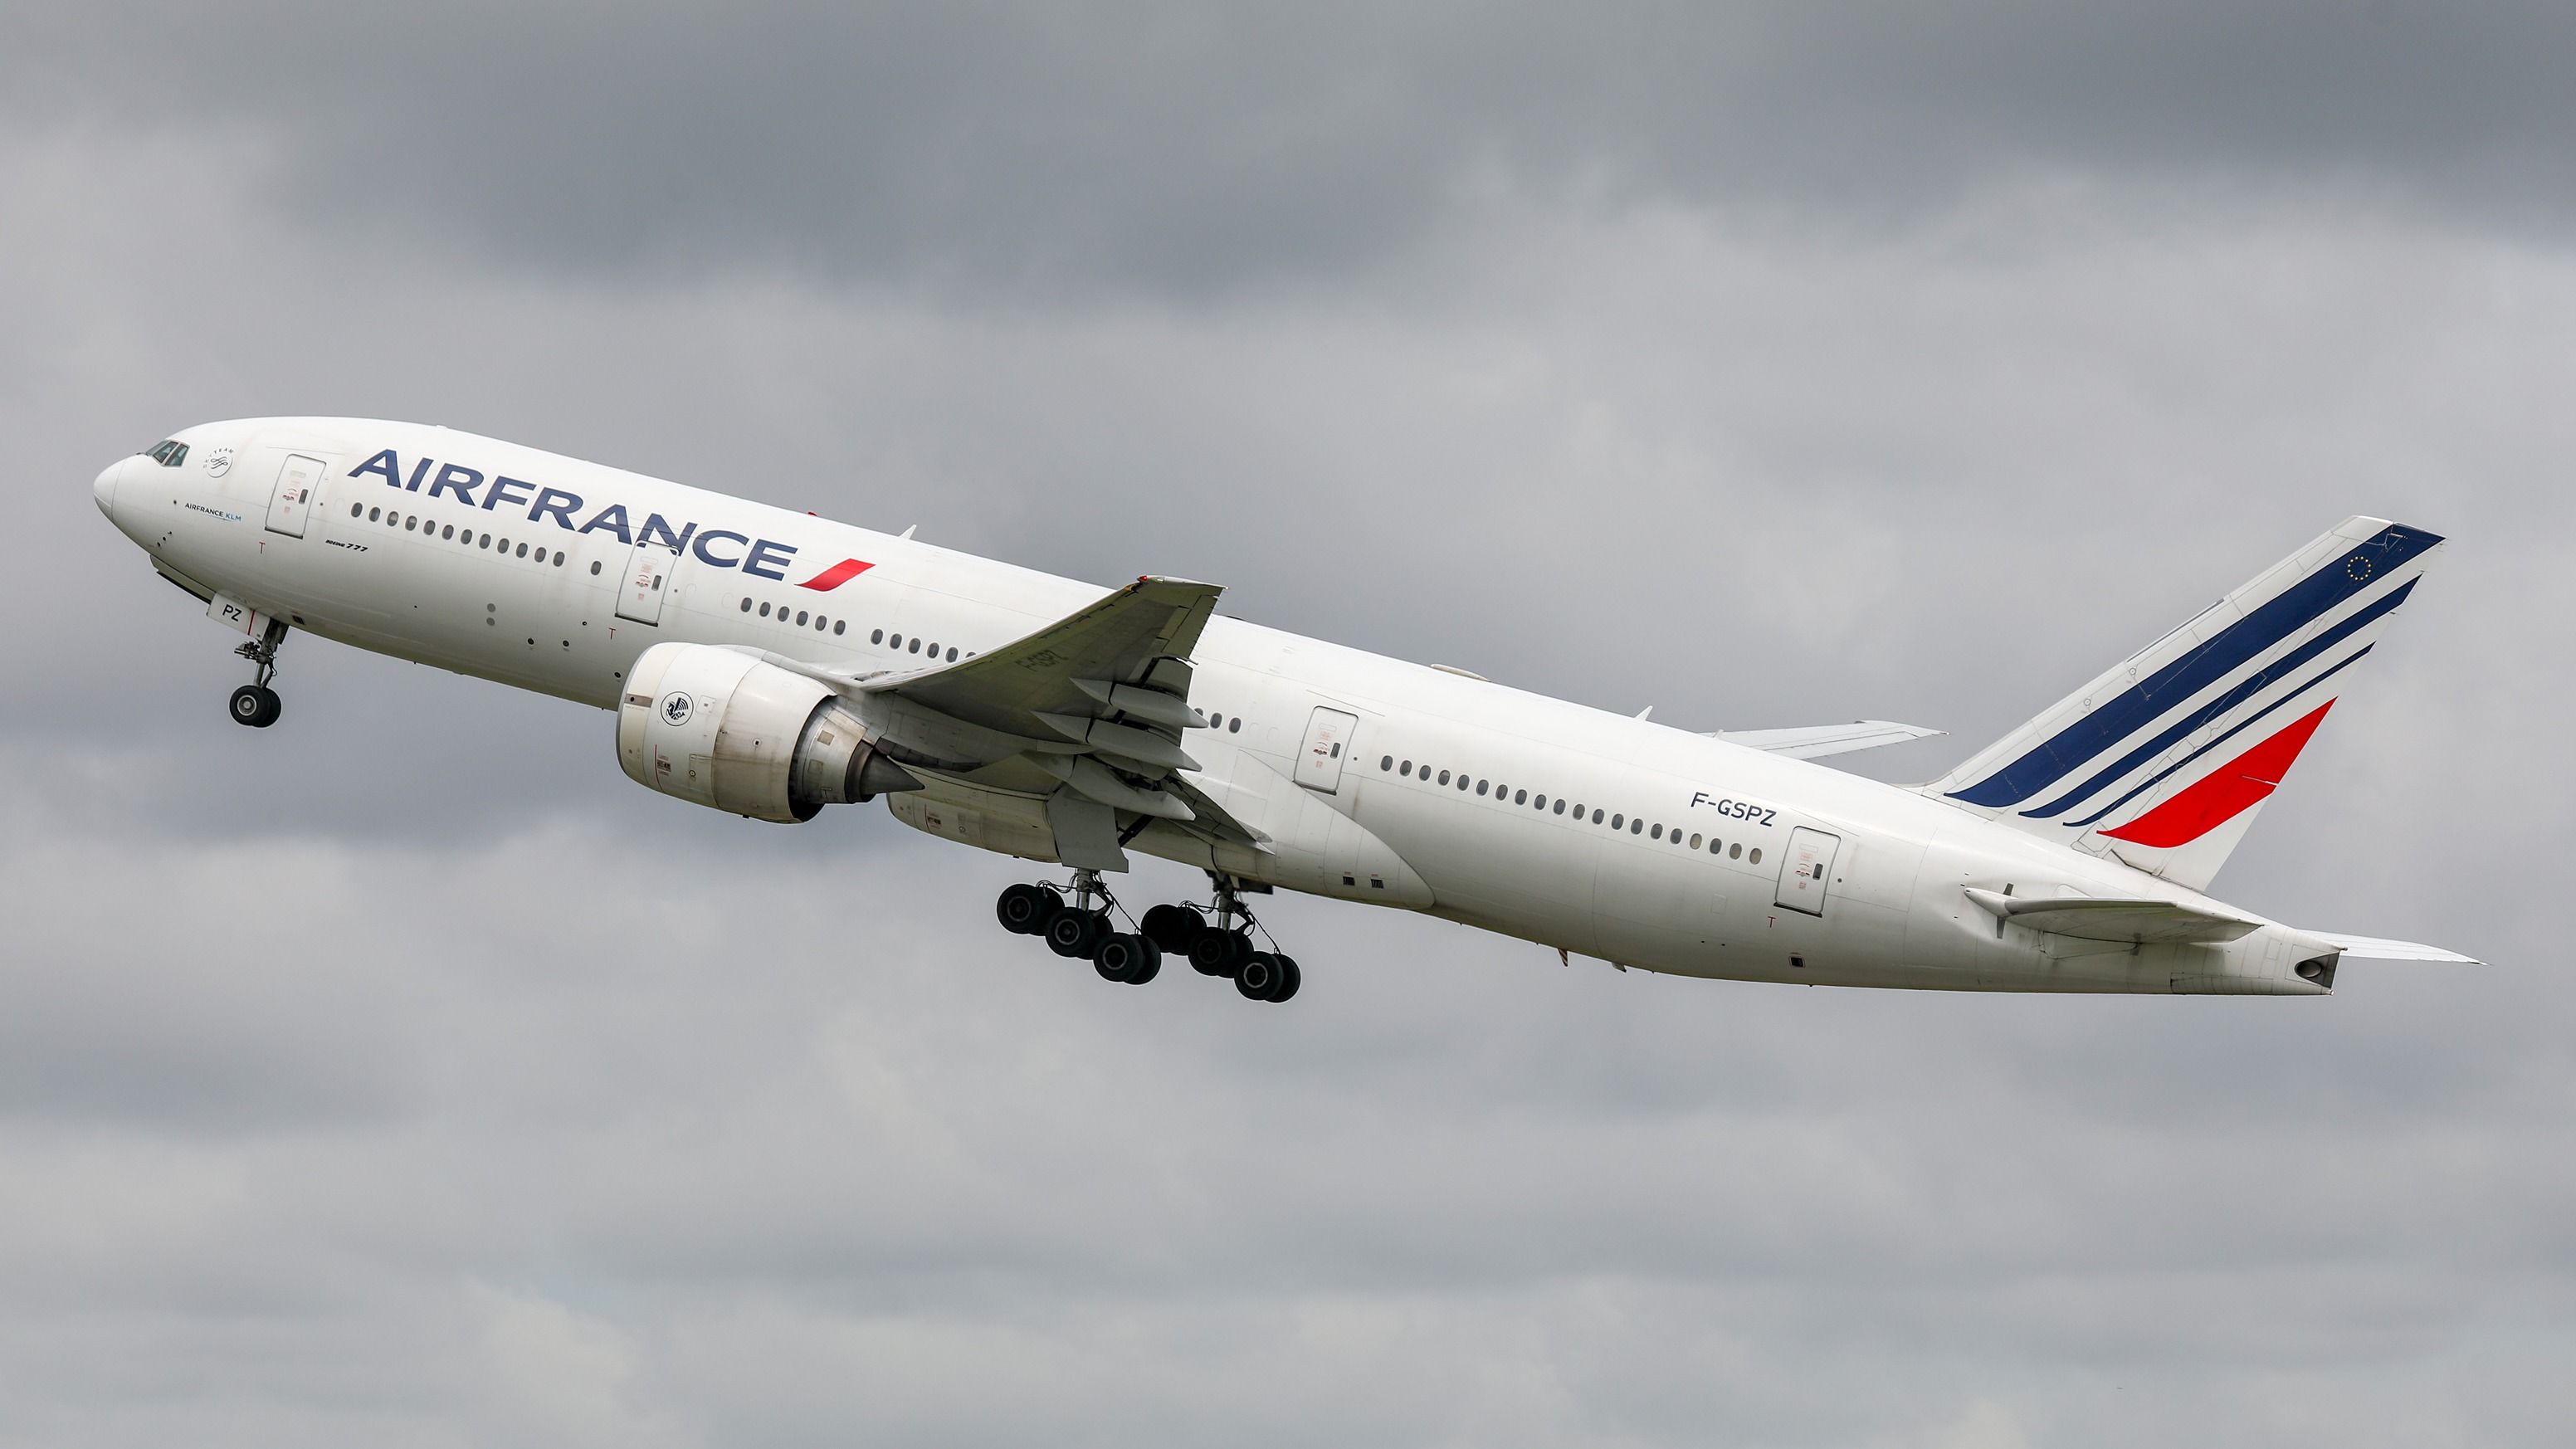 Air France Boeing 777-200ER departing BKK shutterstock_1336860311